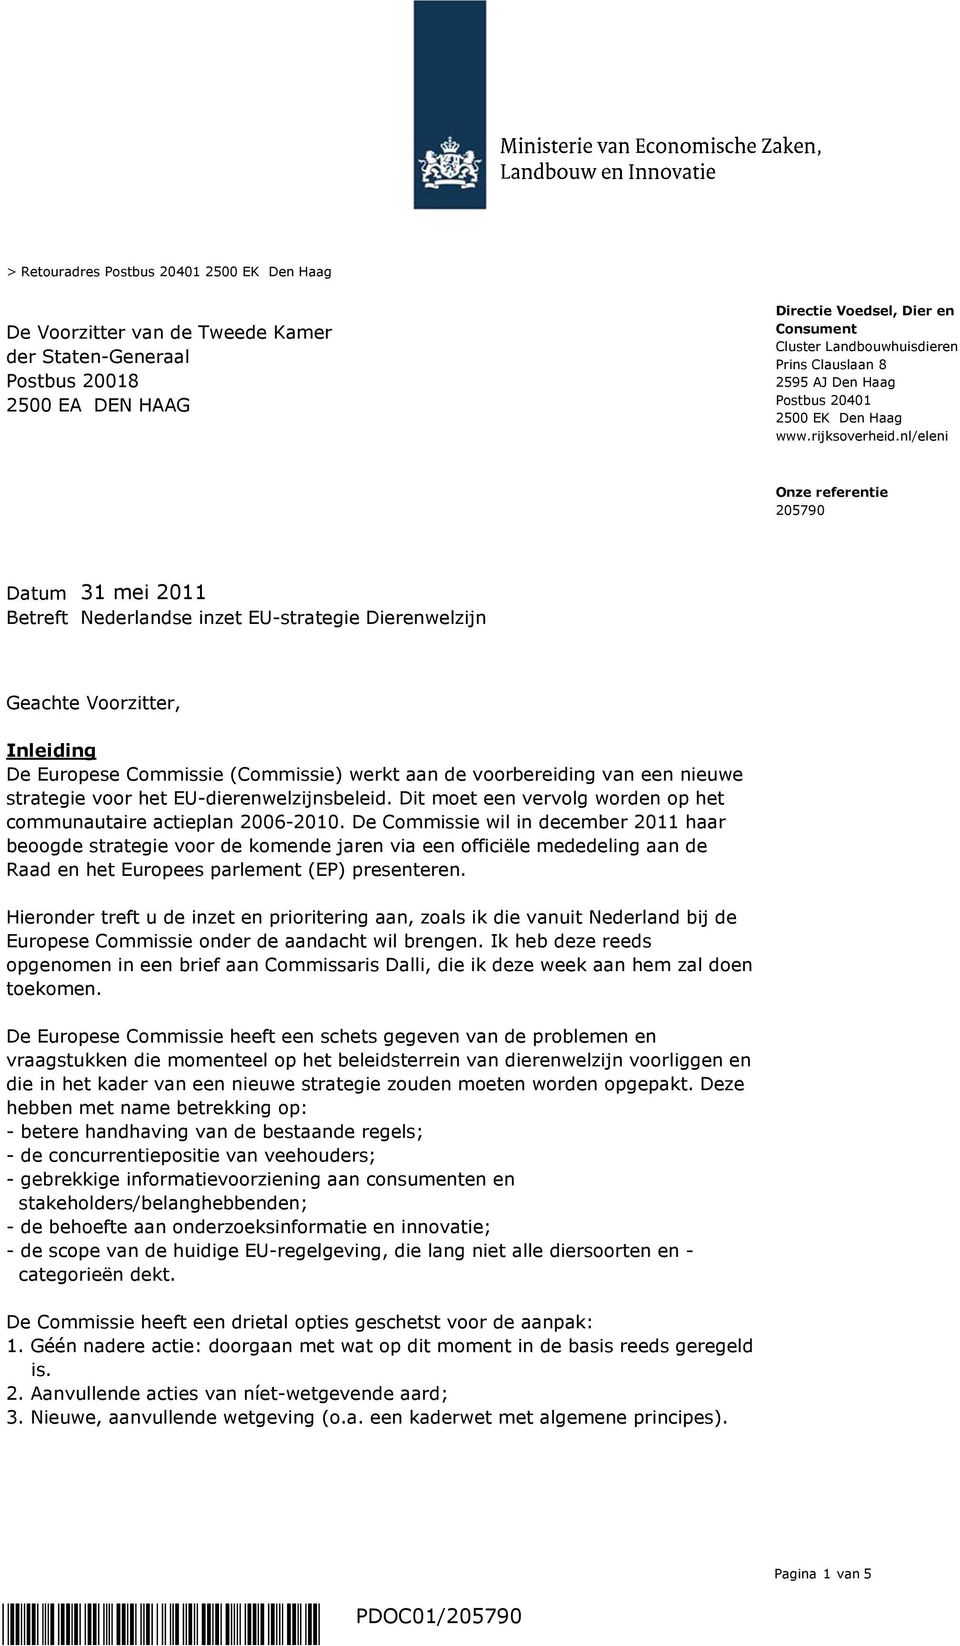 nl/eleni Datum 31 mei 2011 Betreft Nederlandse inzet EU-strategie Dierenwelzijn Geachte Voorzitter, Inleiding De Europese Commissie (Commissie) werkt aan de voorbereiding van een nieuwe strategie